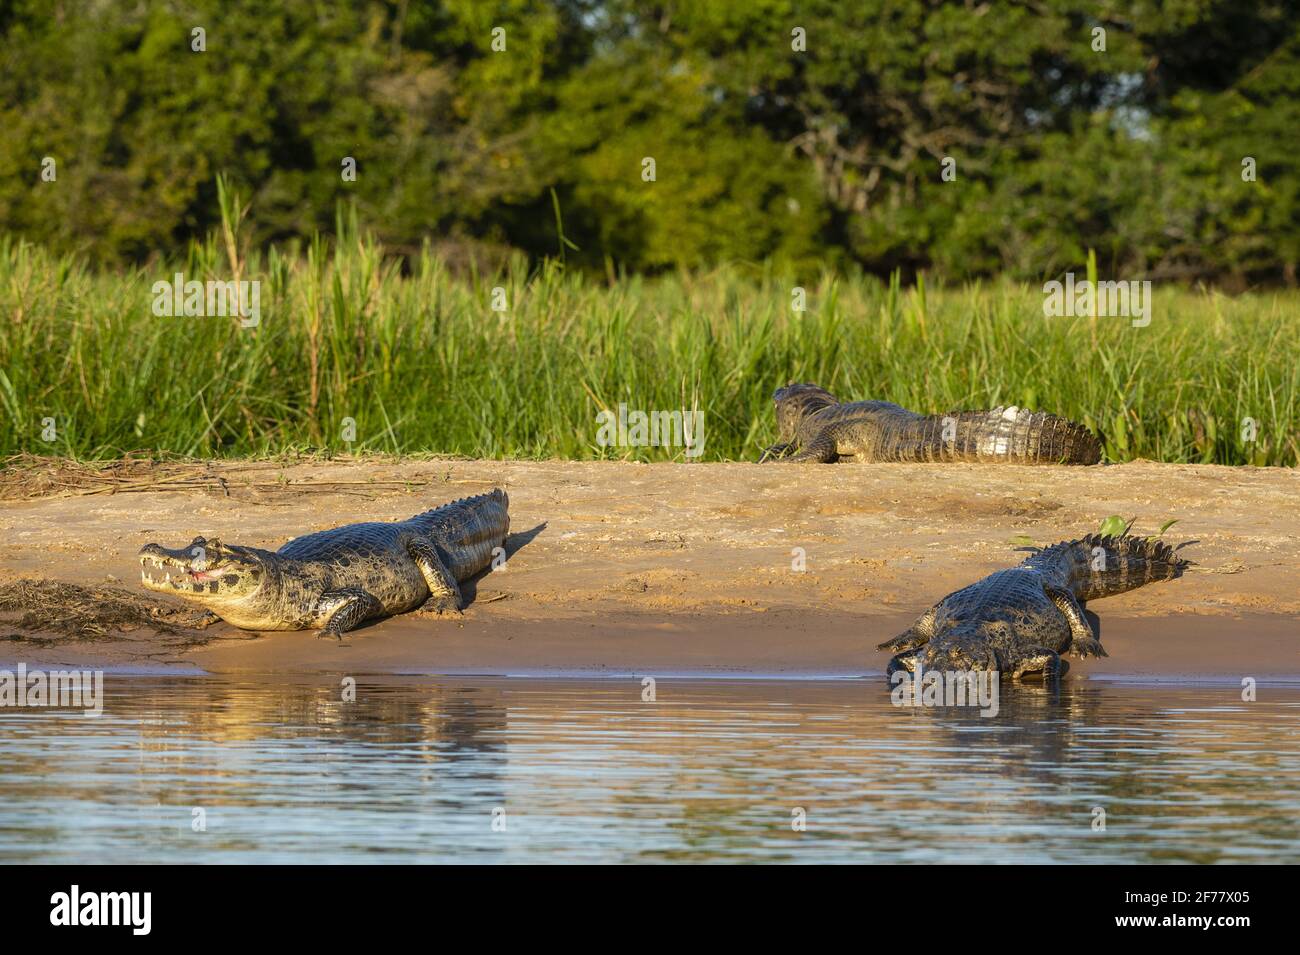 Brésil, Mato Grosso do Sul, Pantanal, Jacare caiman (Caiman yacare) Banque D'Images